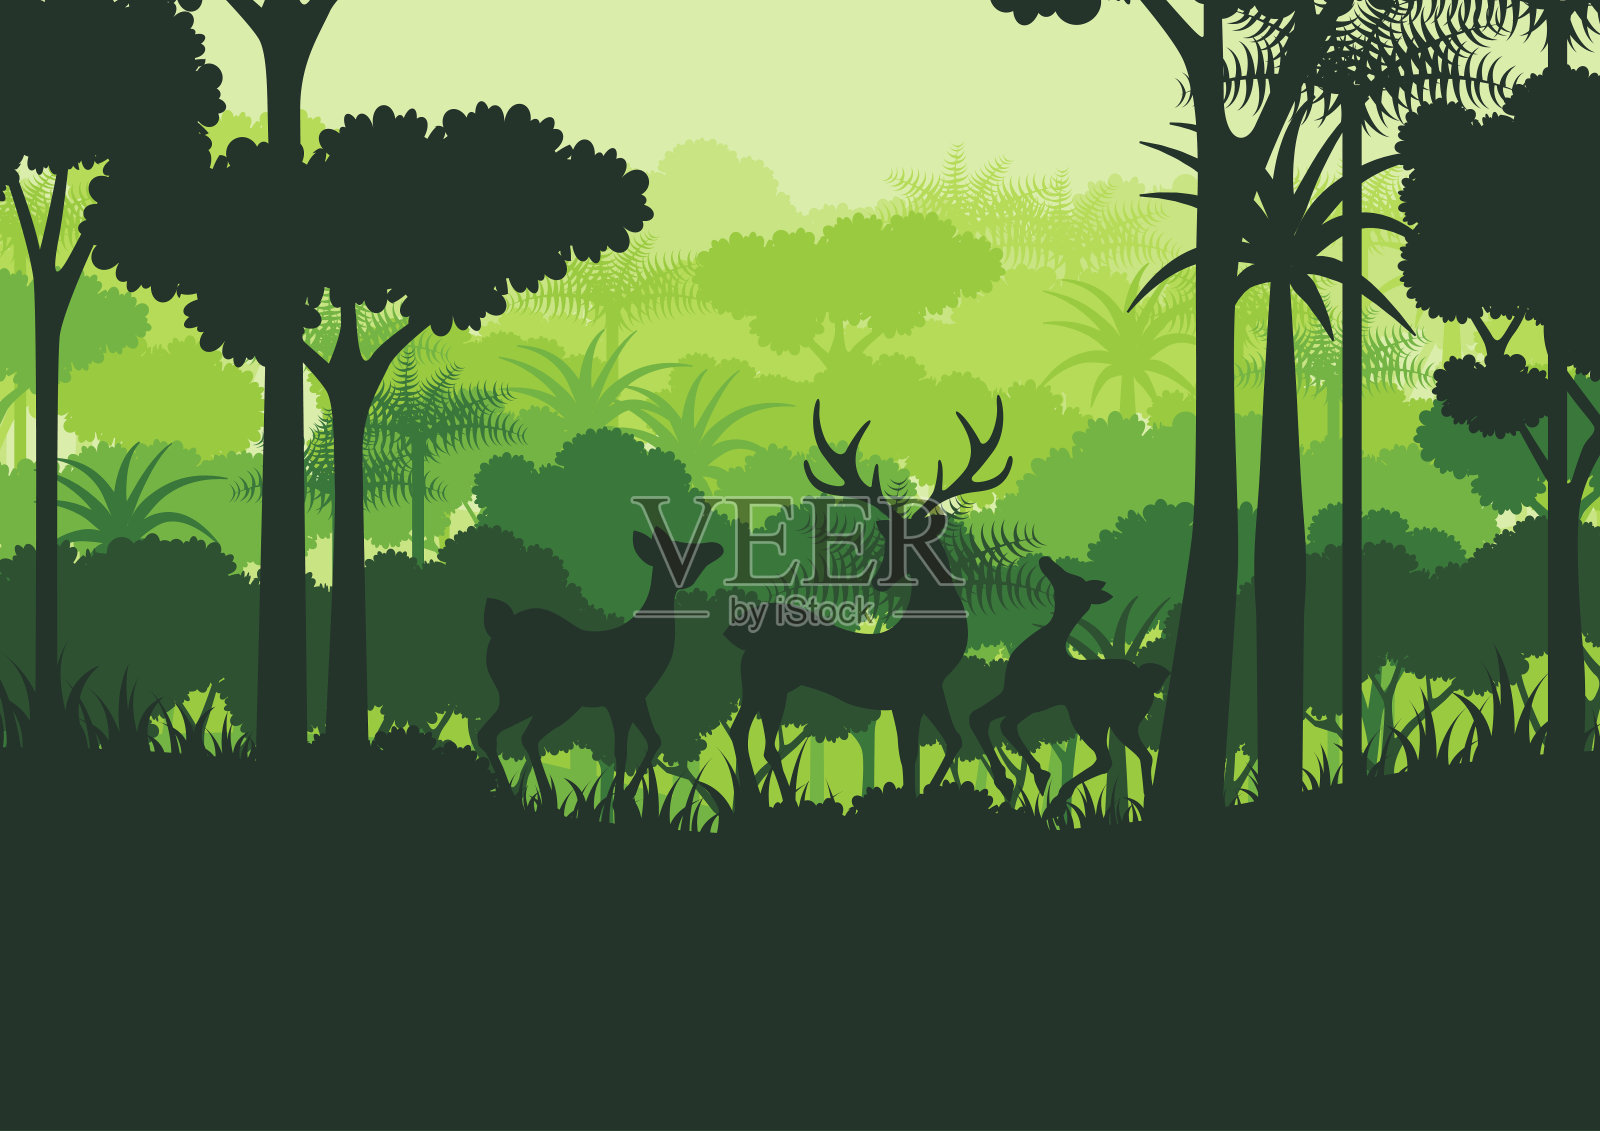 鹿的野生剪影和绿色的自然森林背景插画图片素材